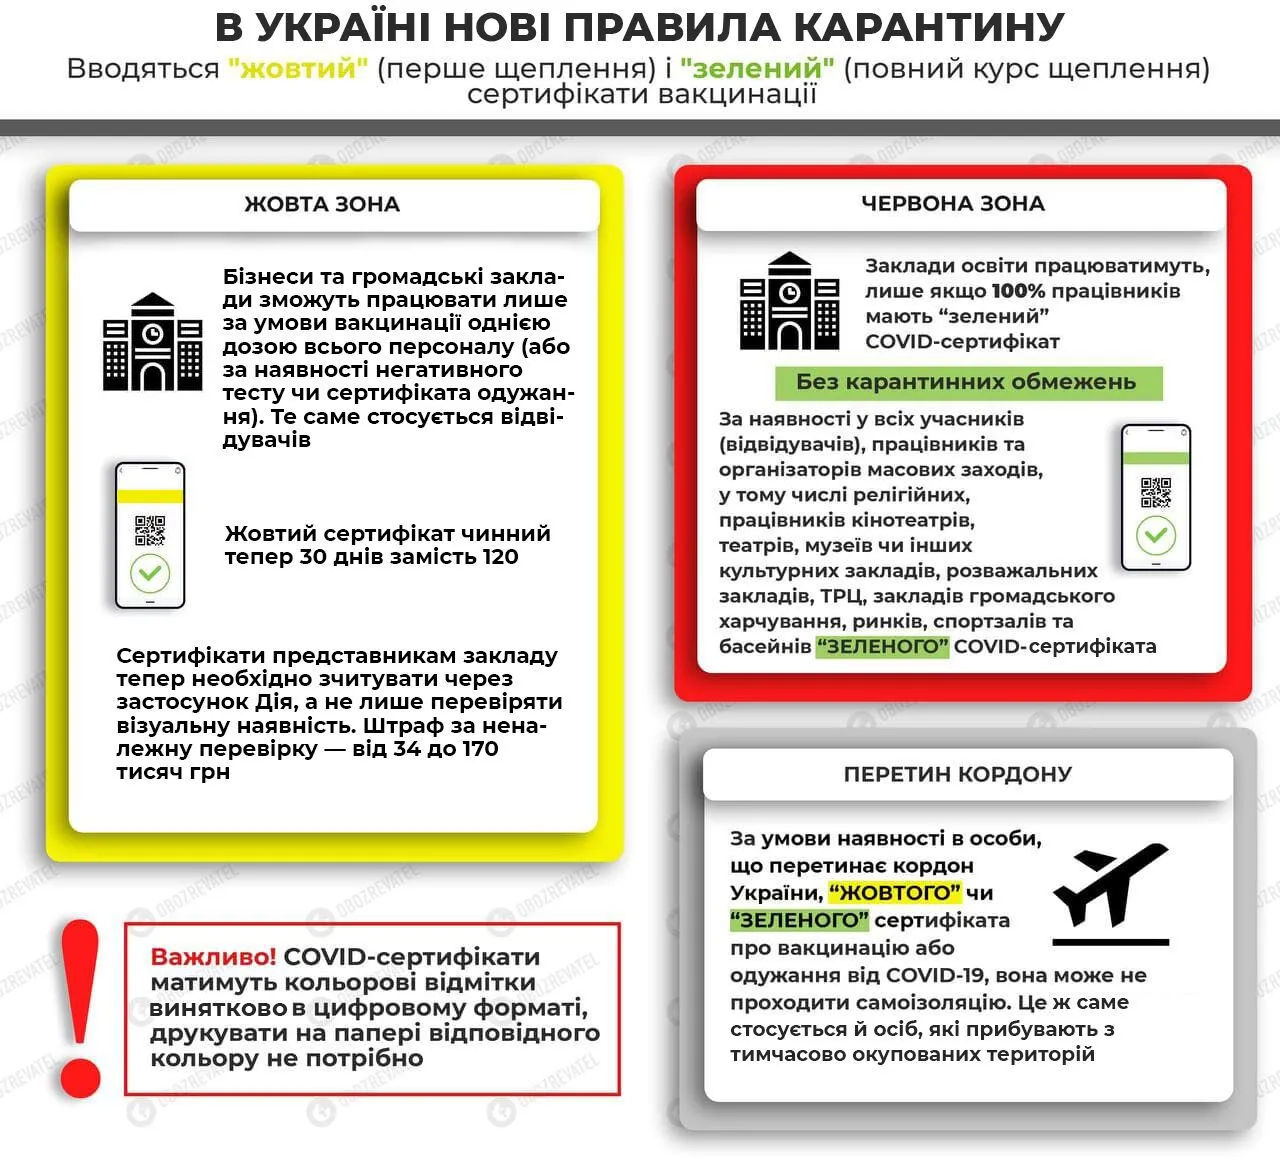 Карантинні обмеження в Україні з 6 грудня